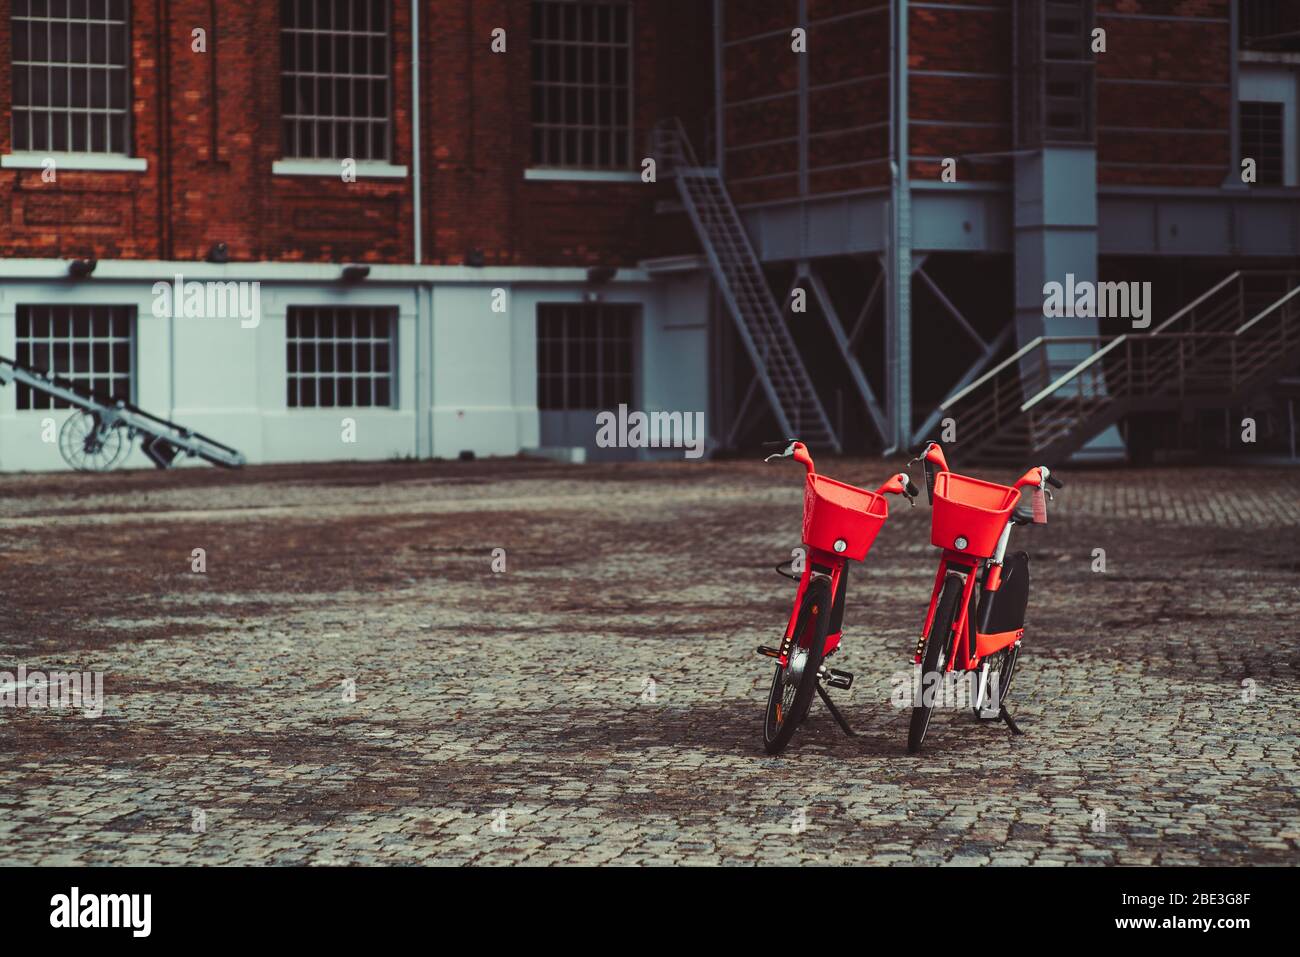 Zwei leuchtend rote Leihfahrräder, die auf einem Pflasterstein vor einem Backsteingebäude geparkt sind; zwei Gemeinschaftsfahrräder mit Metallkörben am Steuerstand im Freien Stockfoto